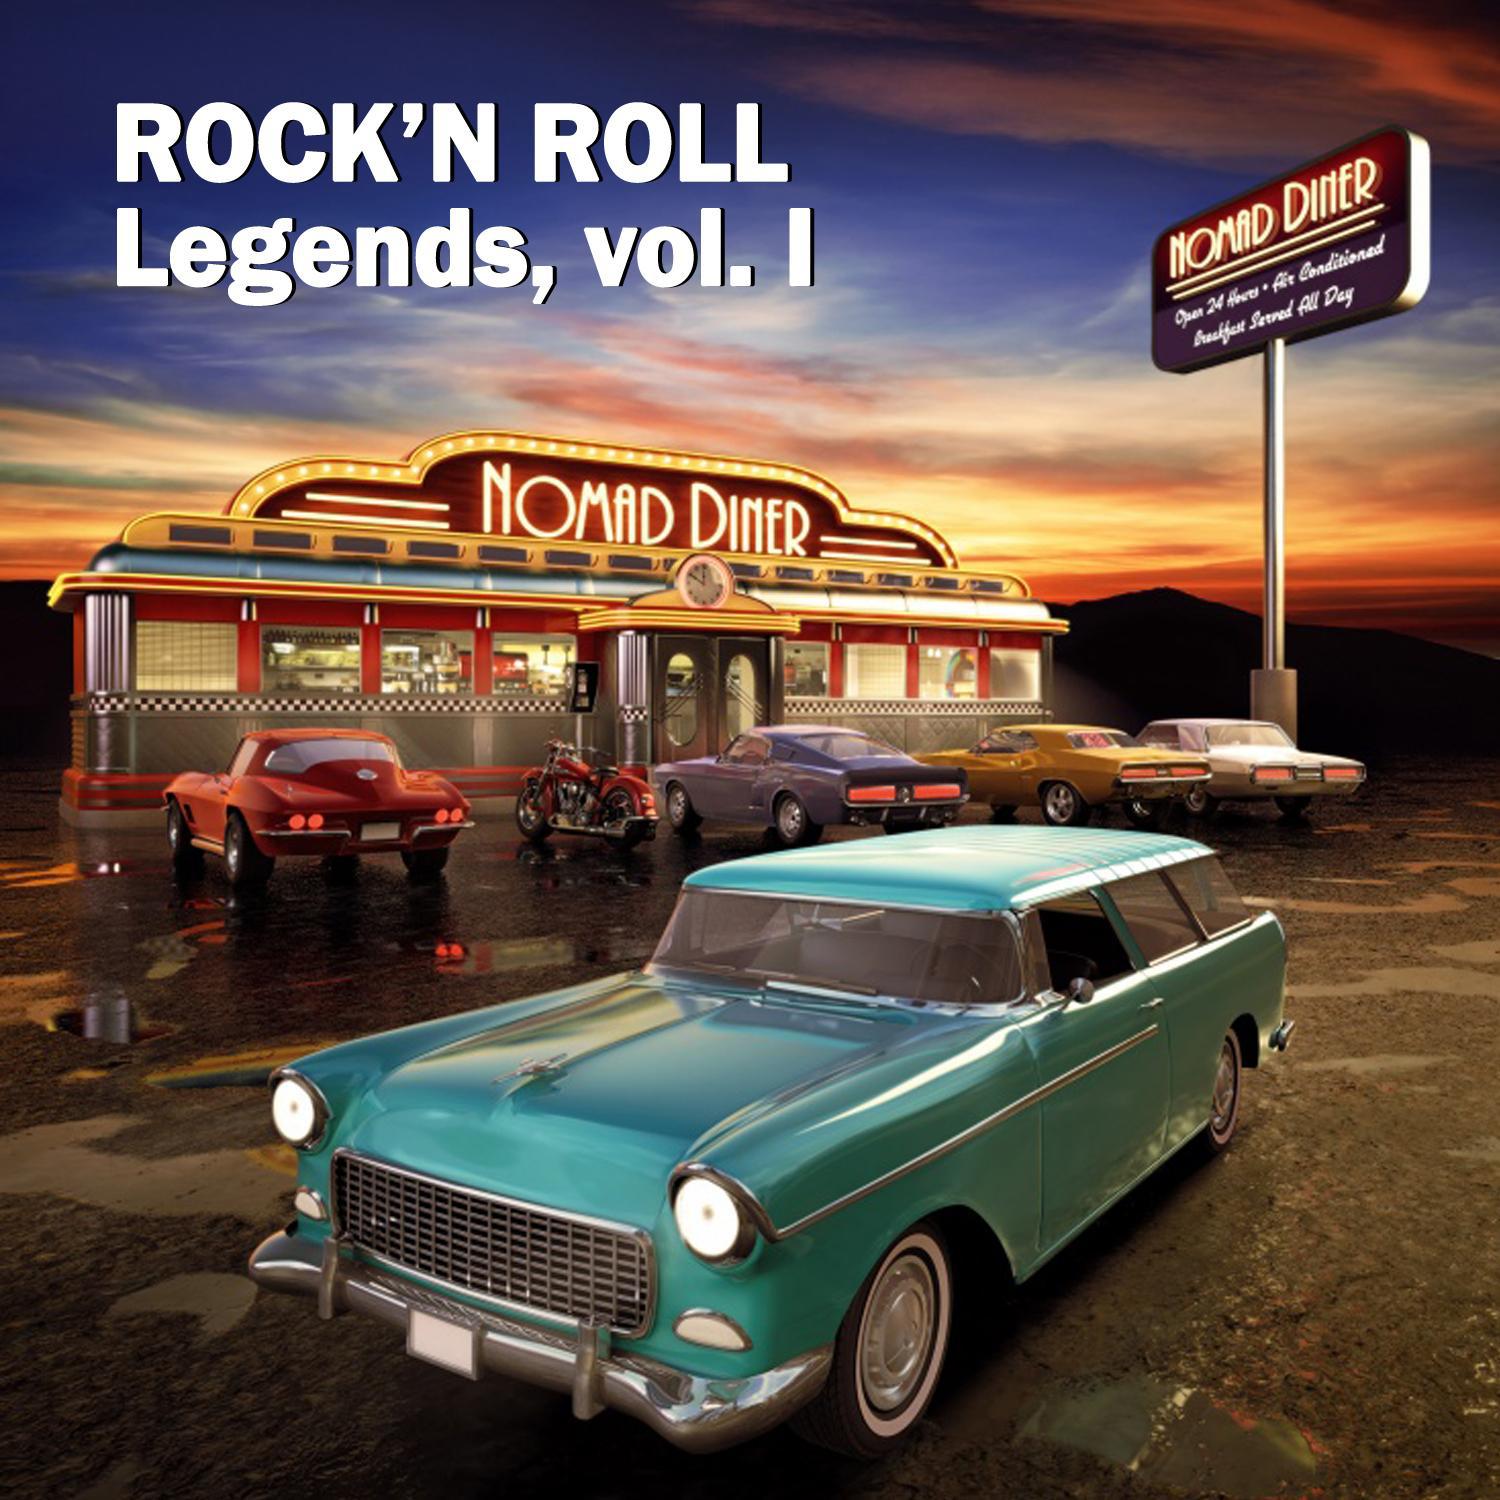 Rock'n Roll Legends, Vol. I